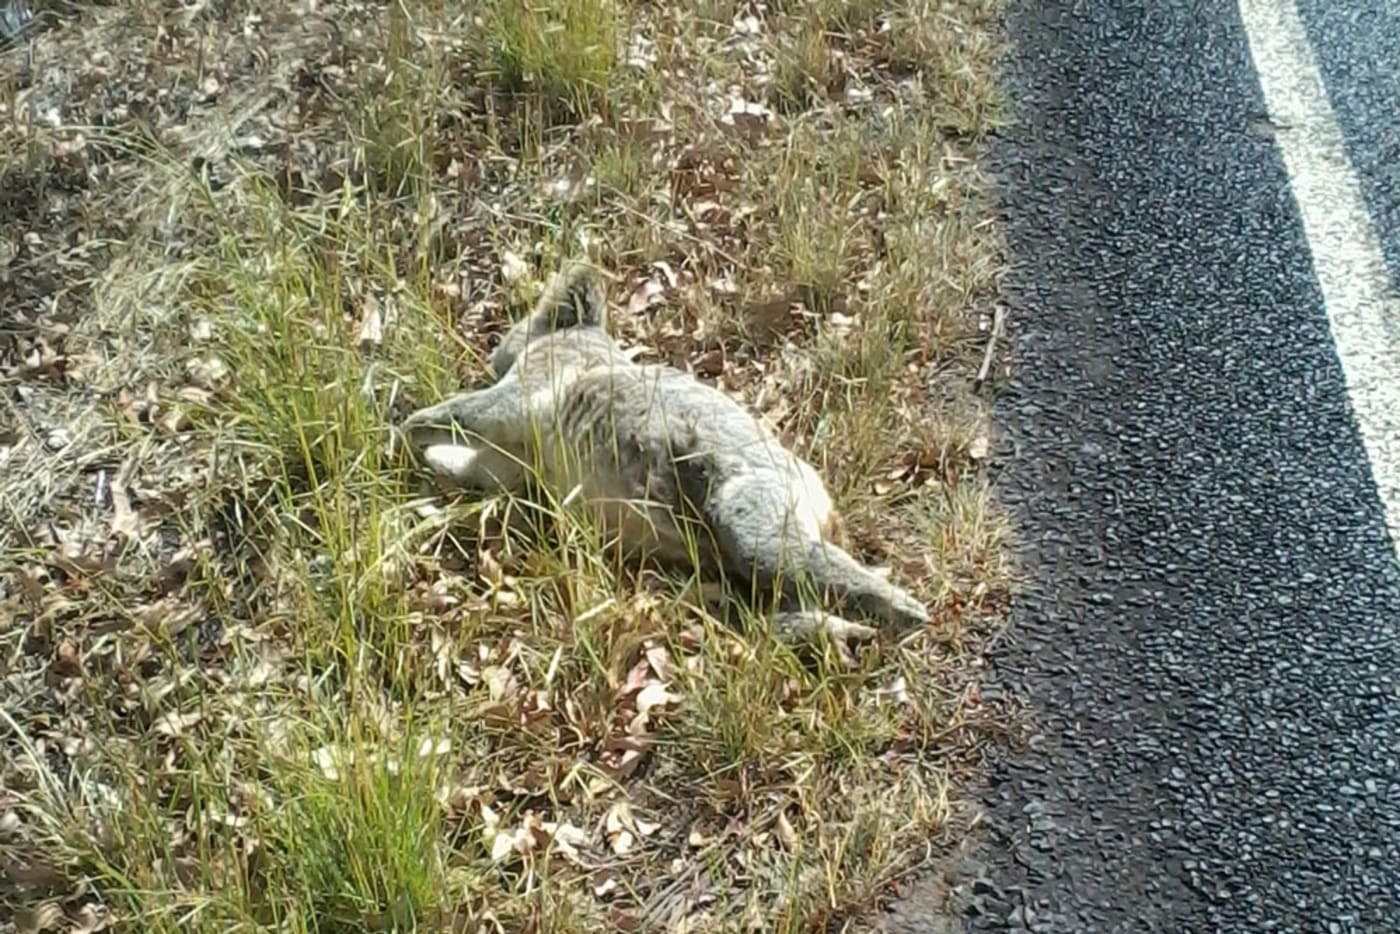 Dead koala on the side of the road